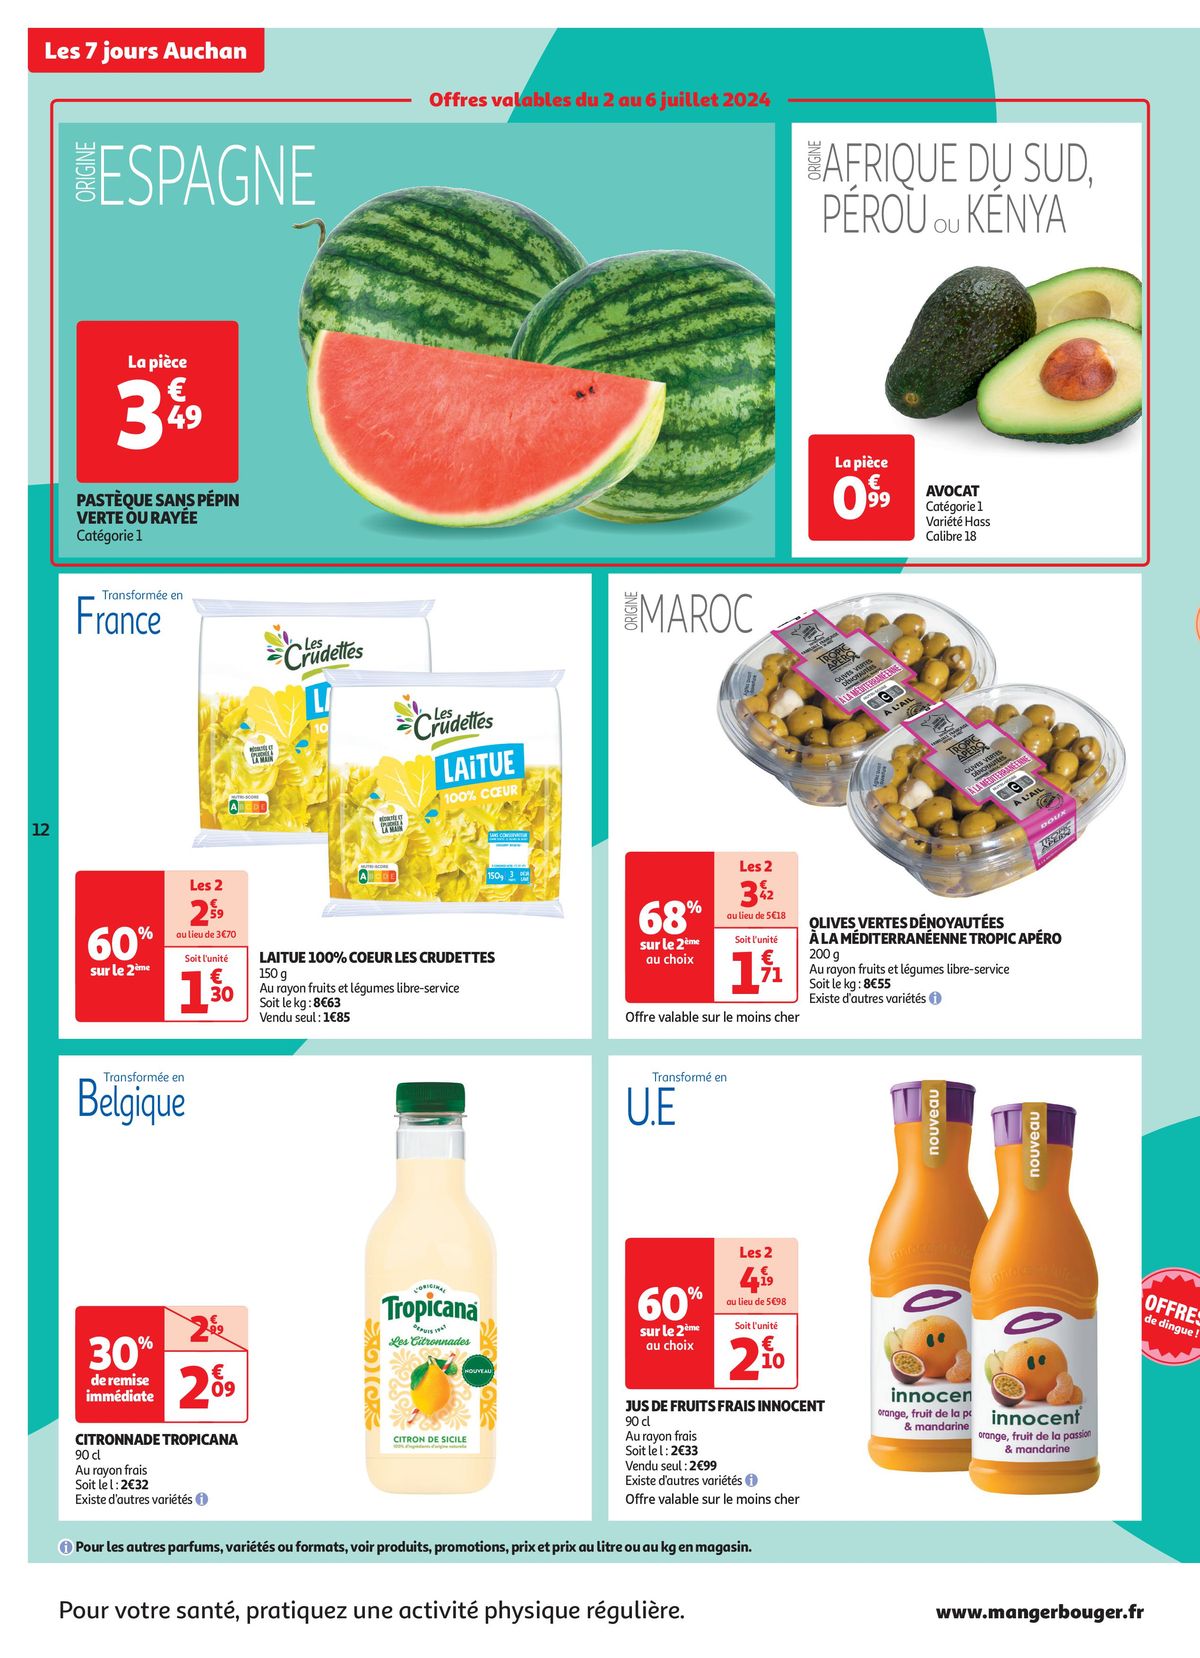 Catalogue C'est les 7 jours Auchan dans votre super !, page 00012